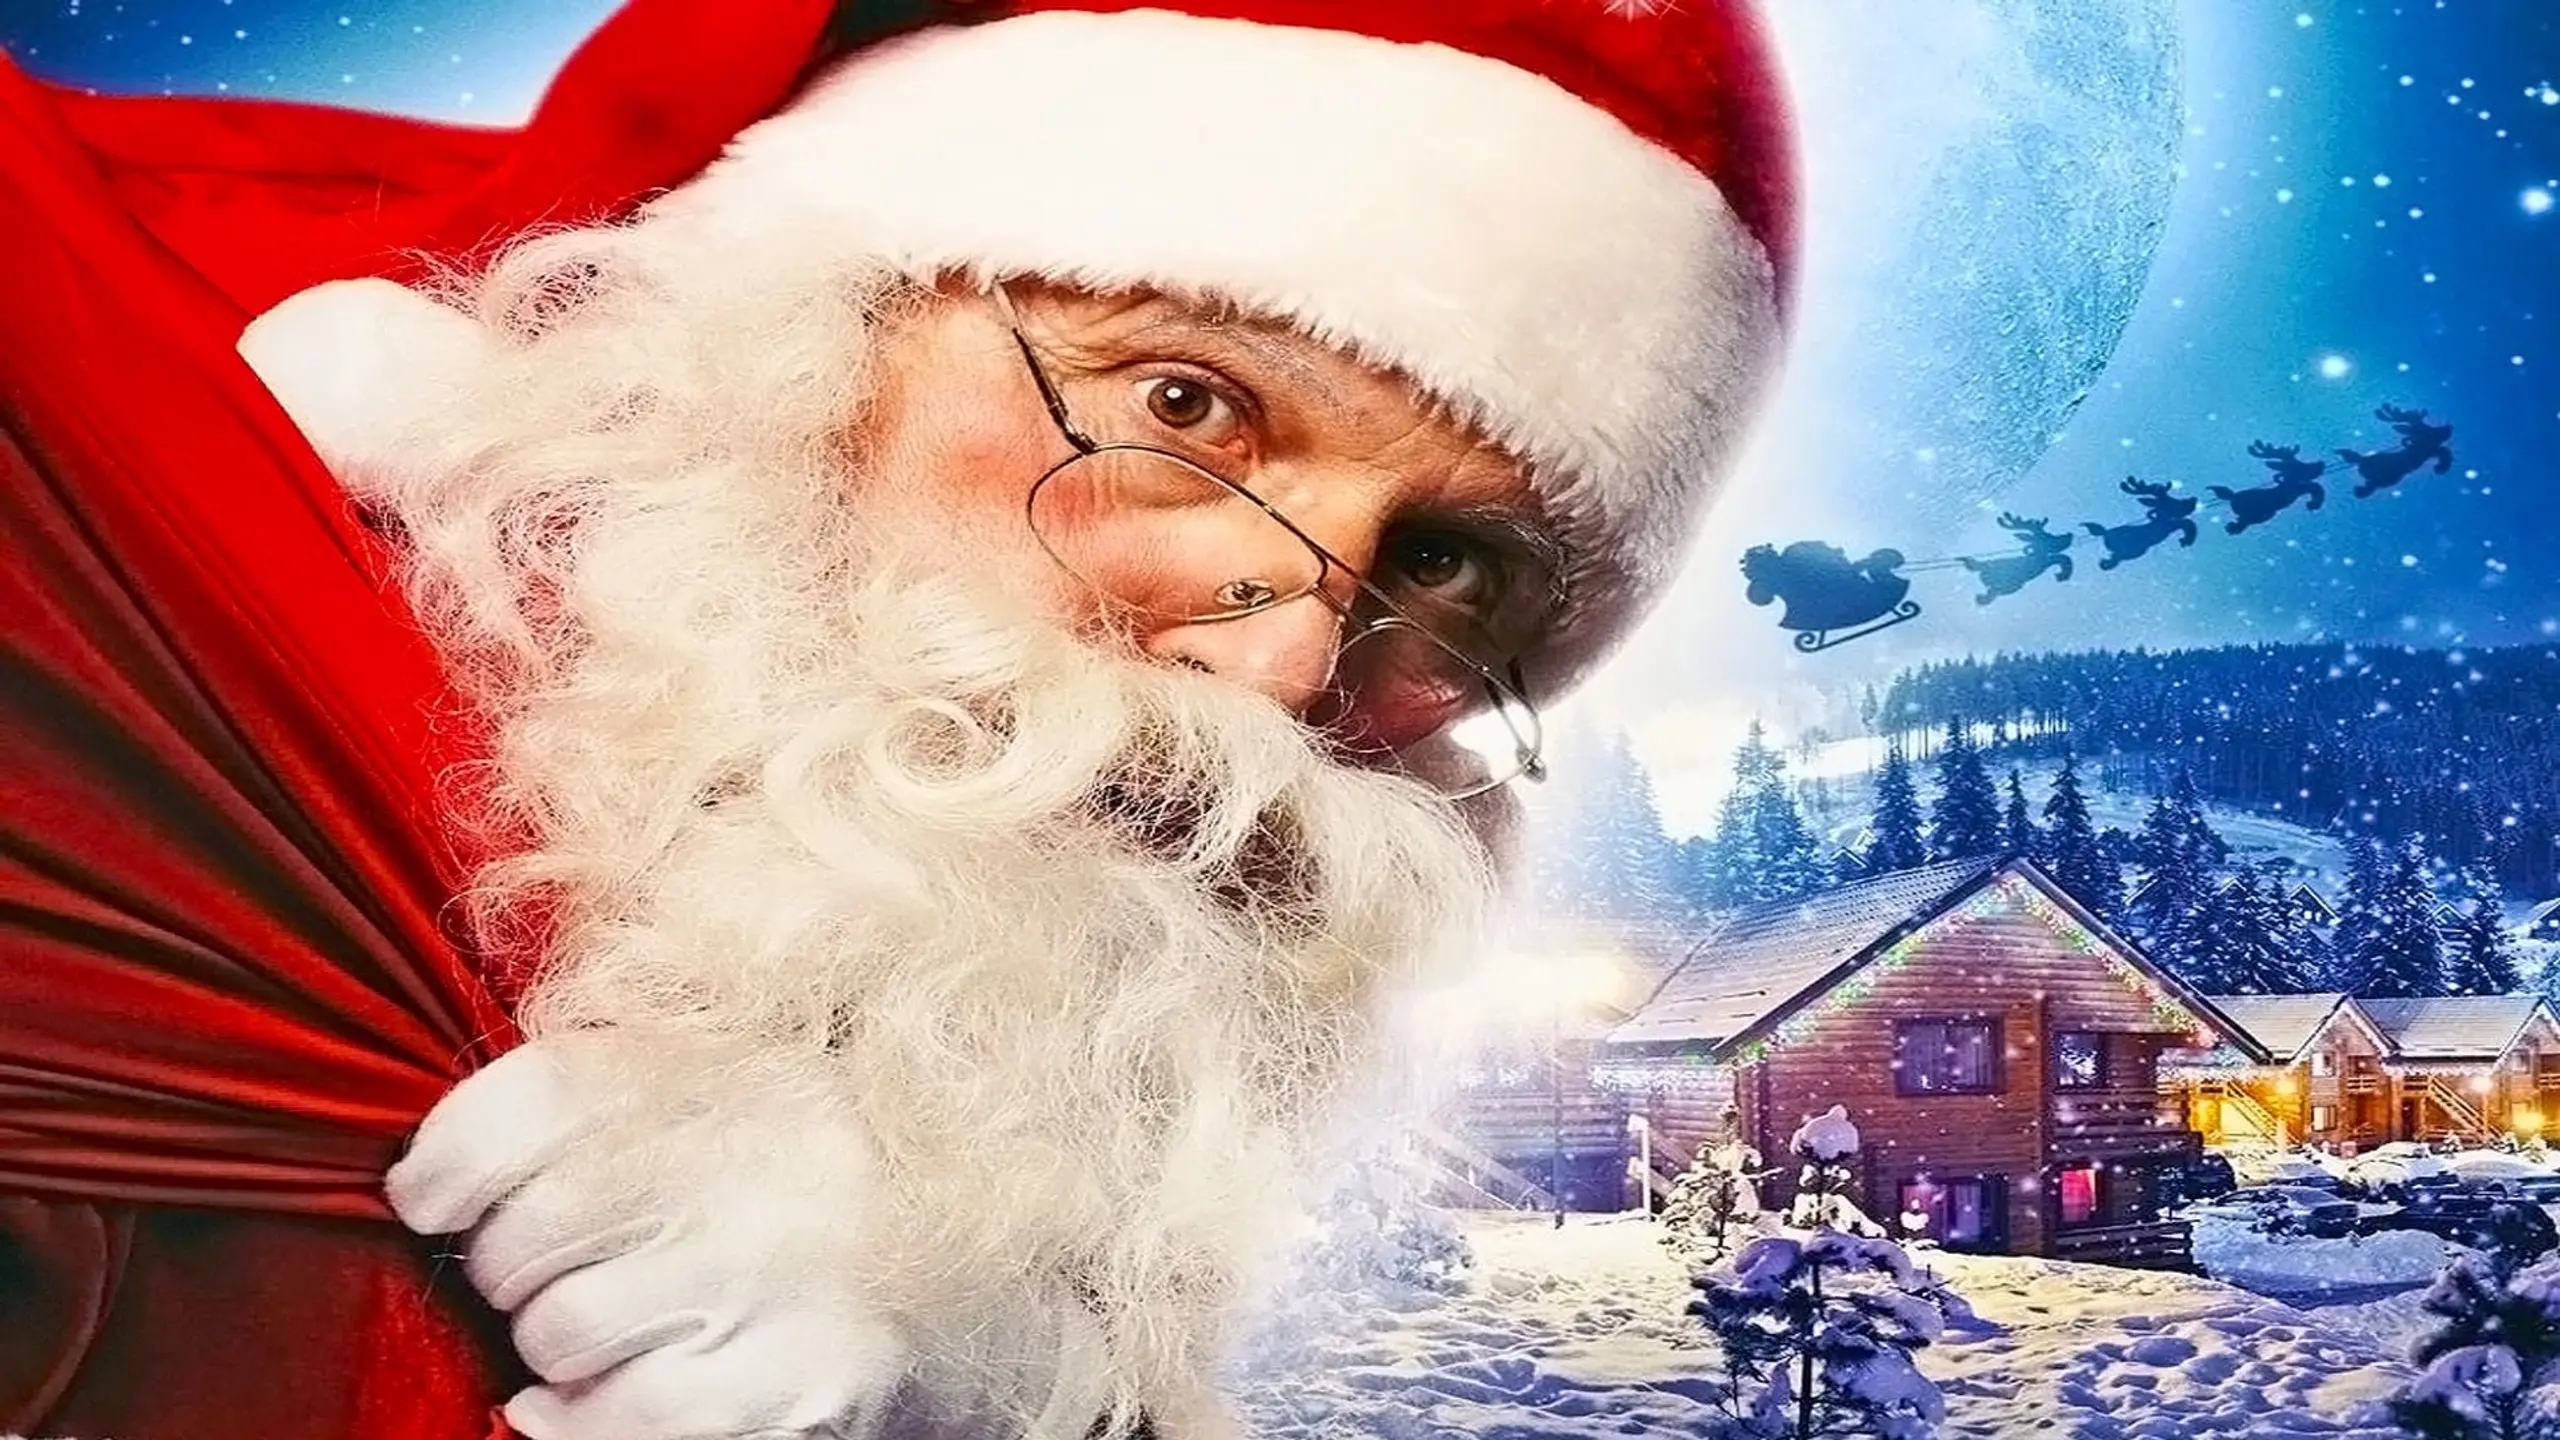 The Santa Incident - Der Weihnachtsvorfall